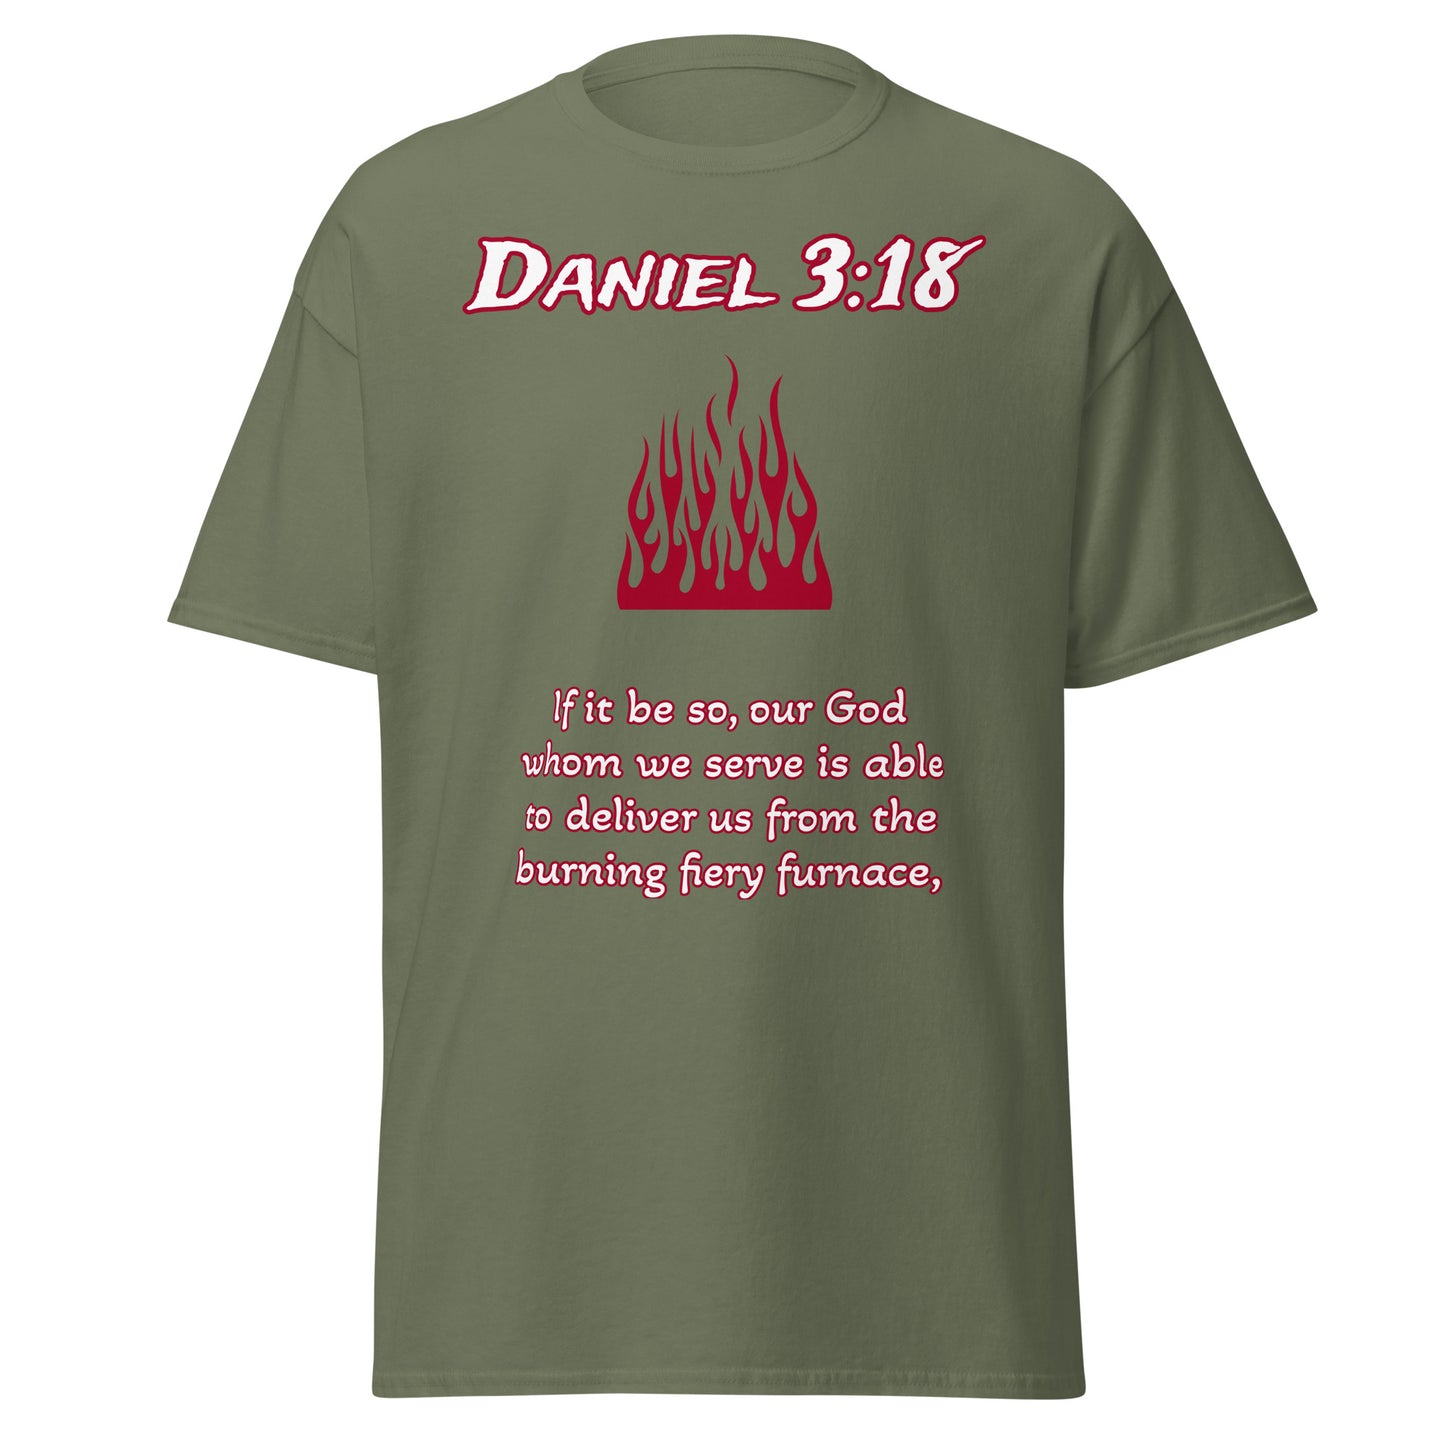 Daniel 3:18